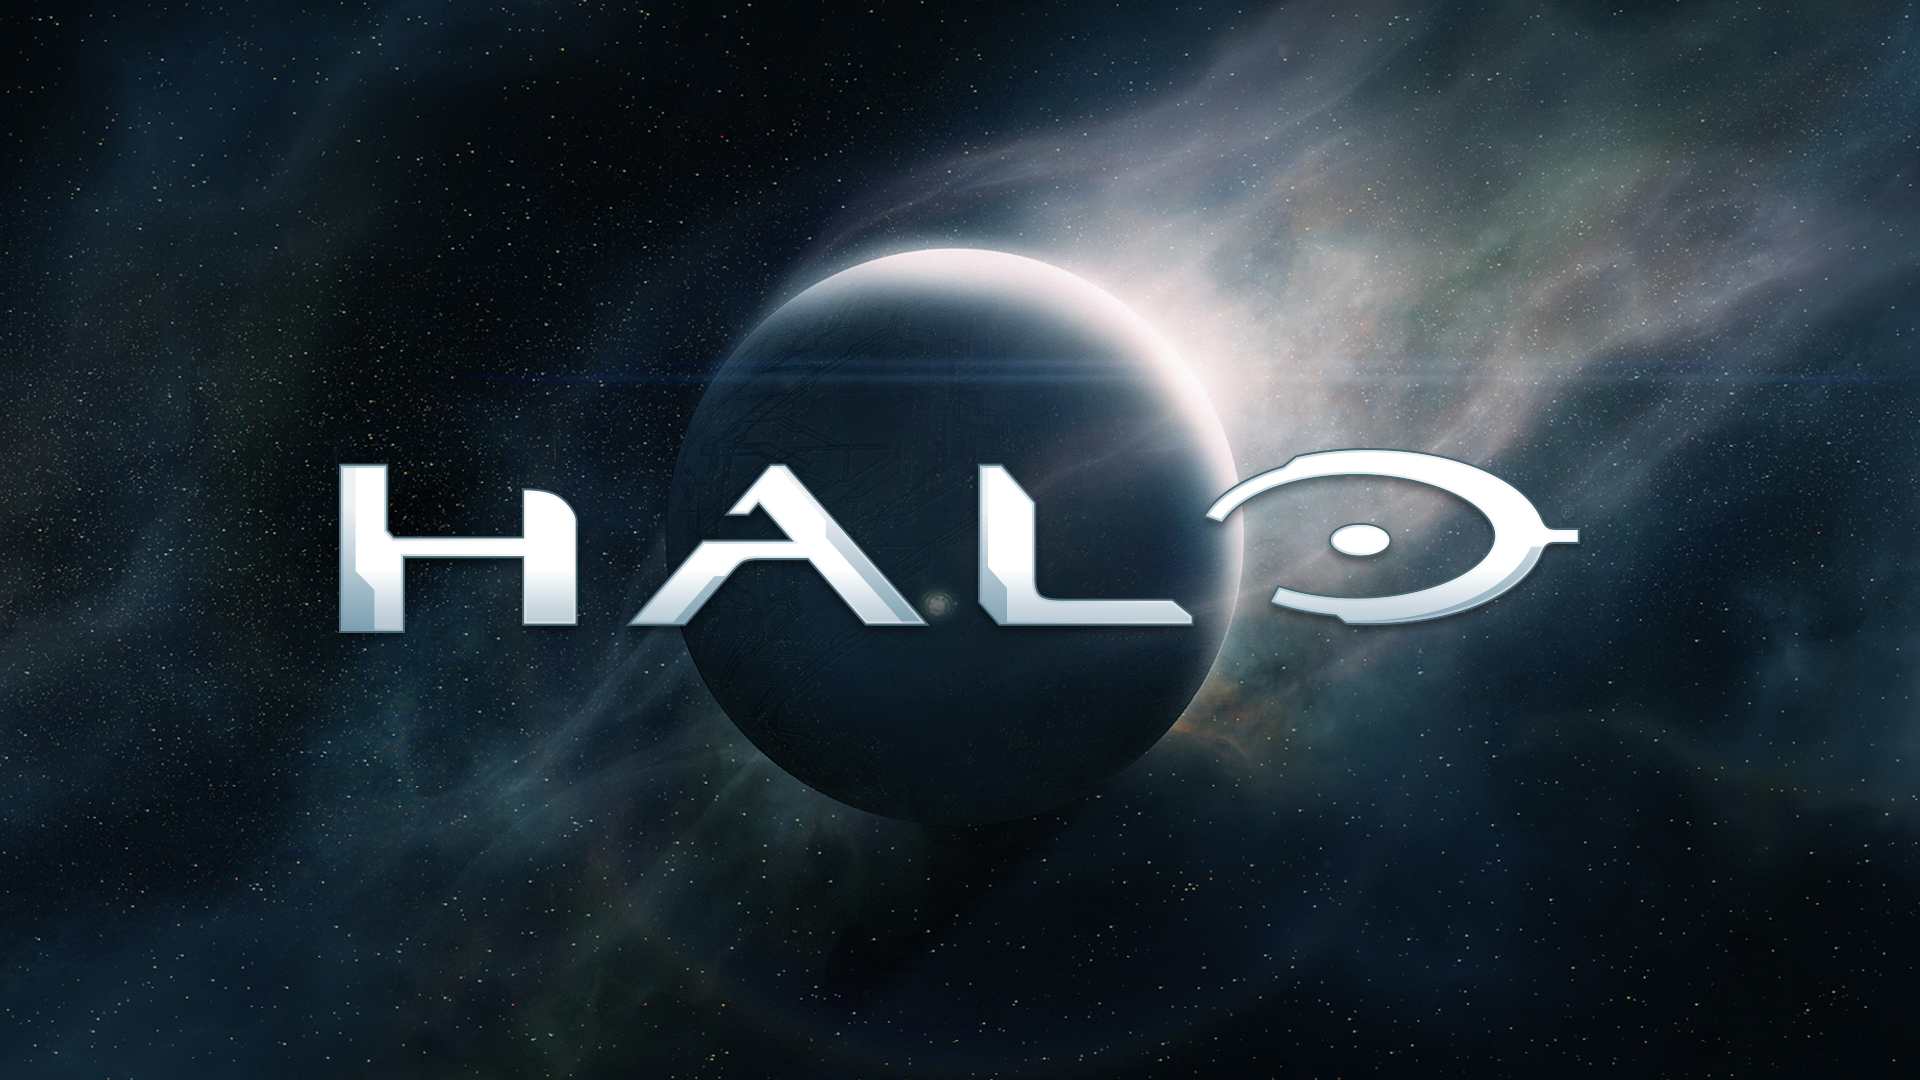 Halo: Showtime annuncia la serie tv tratta dal videogioco